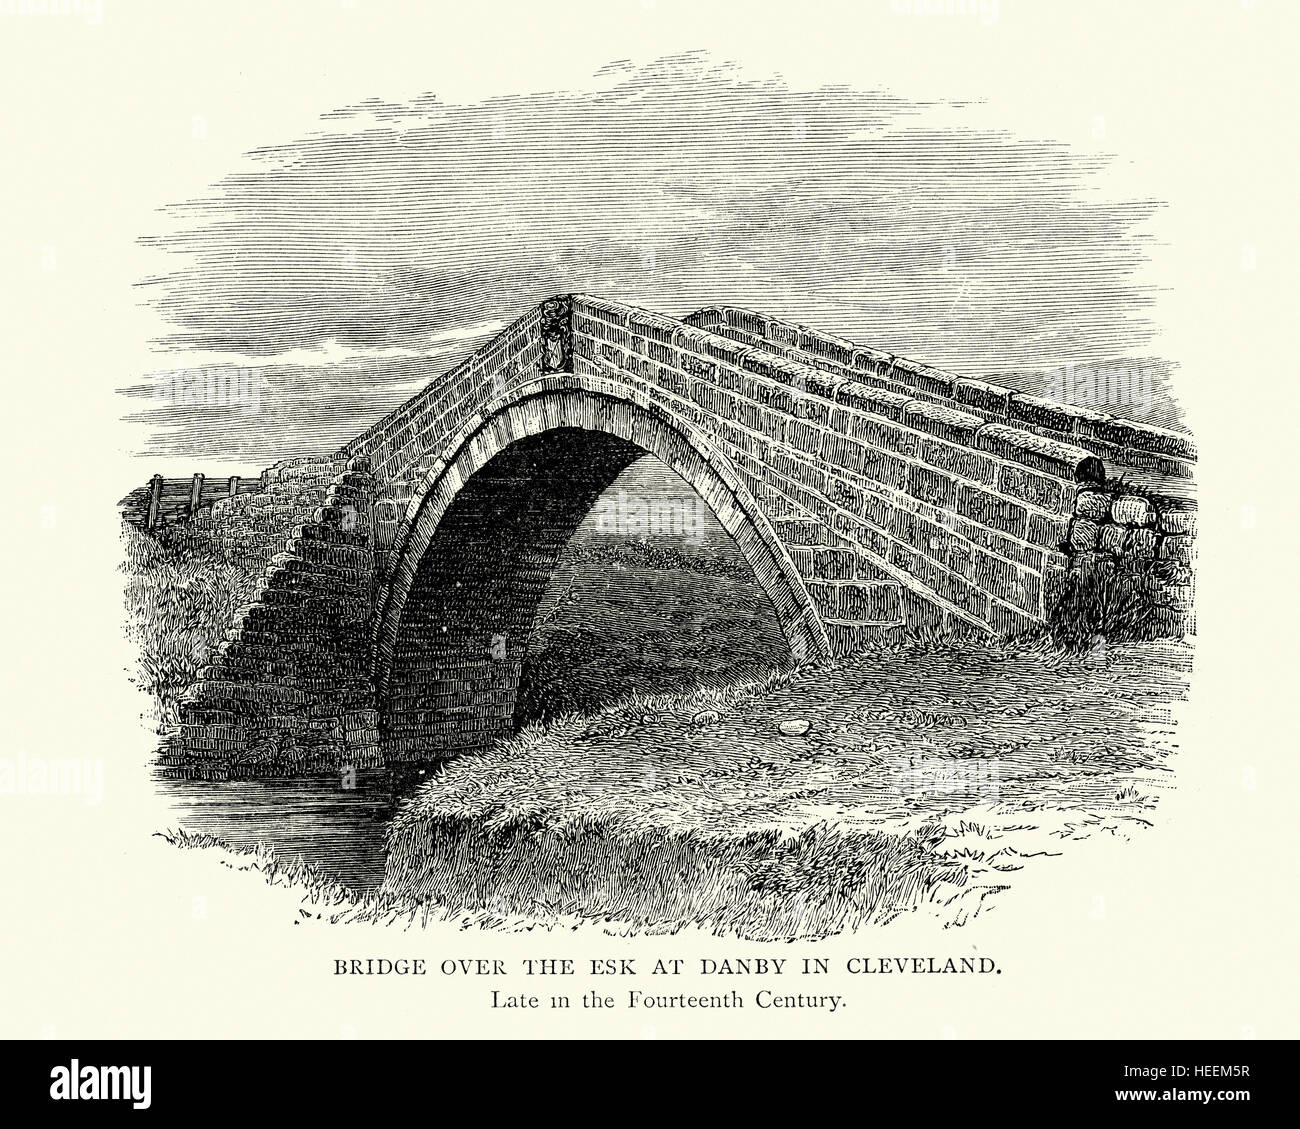 Pont médiéval de la rivière Esk à Danby à Cleveland, fin 14e siècle Banque D'Images